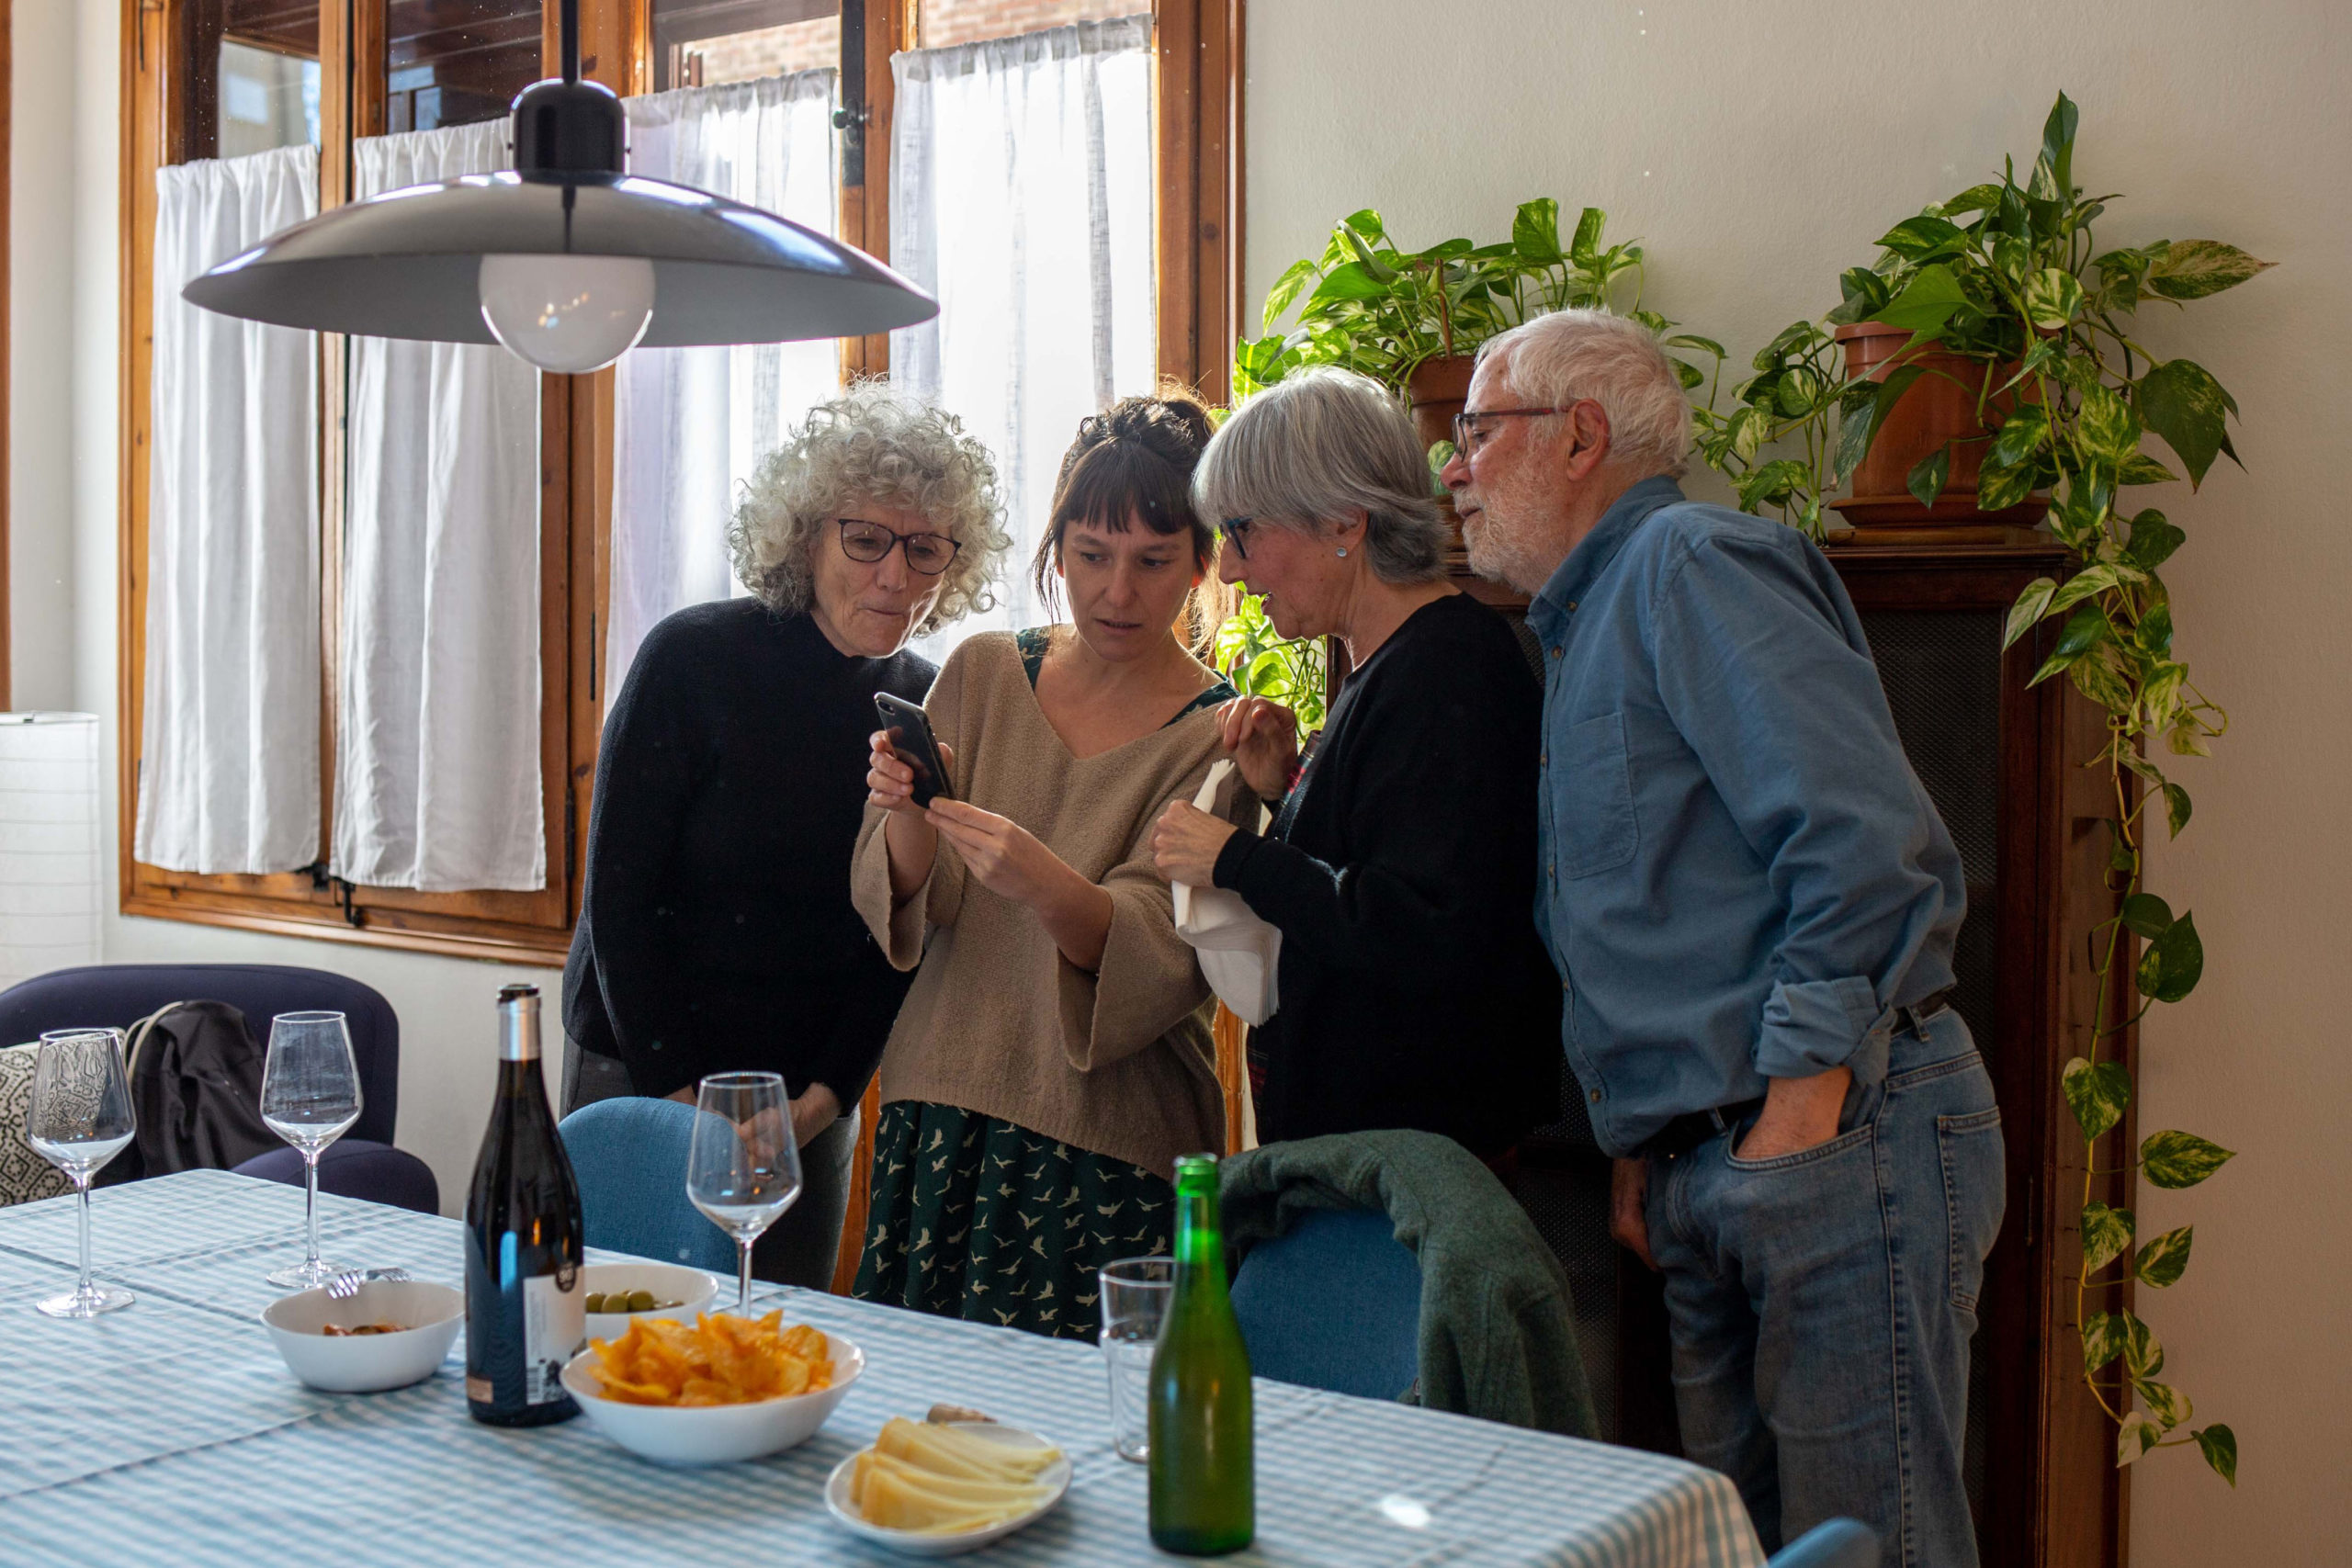 Vista general d'un grup d'amigues mirant el mòbil juntes al menjador de casa